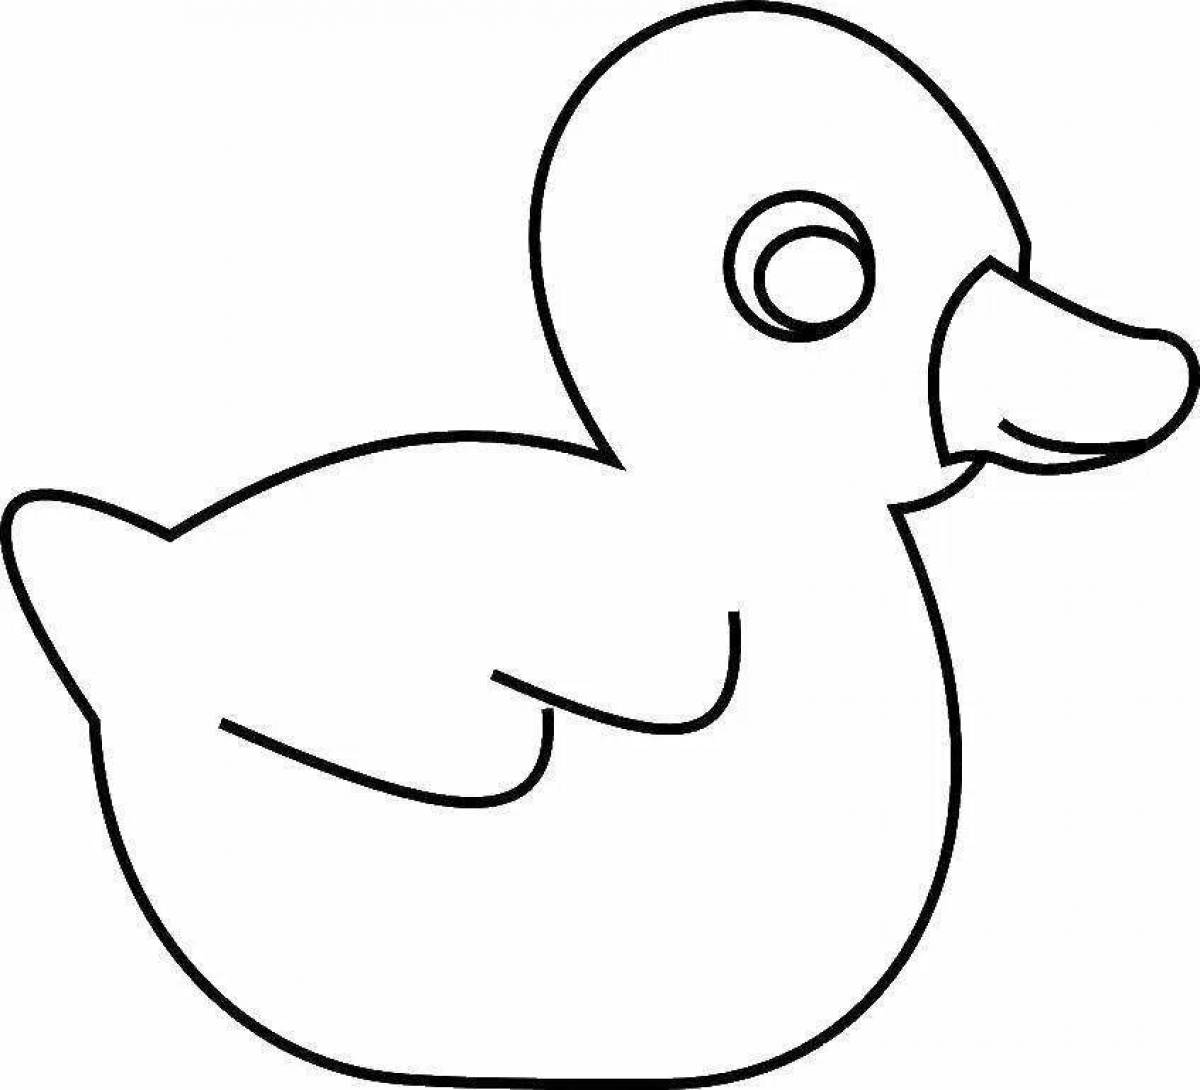 Baby duck #1